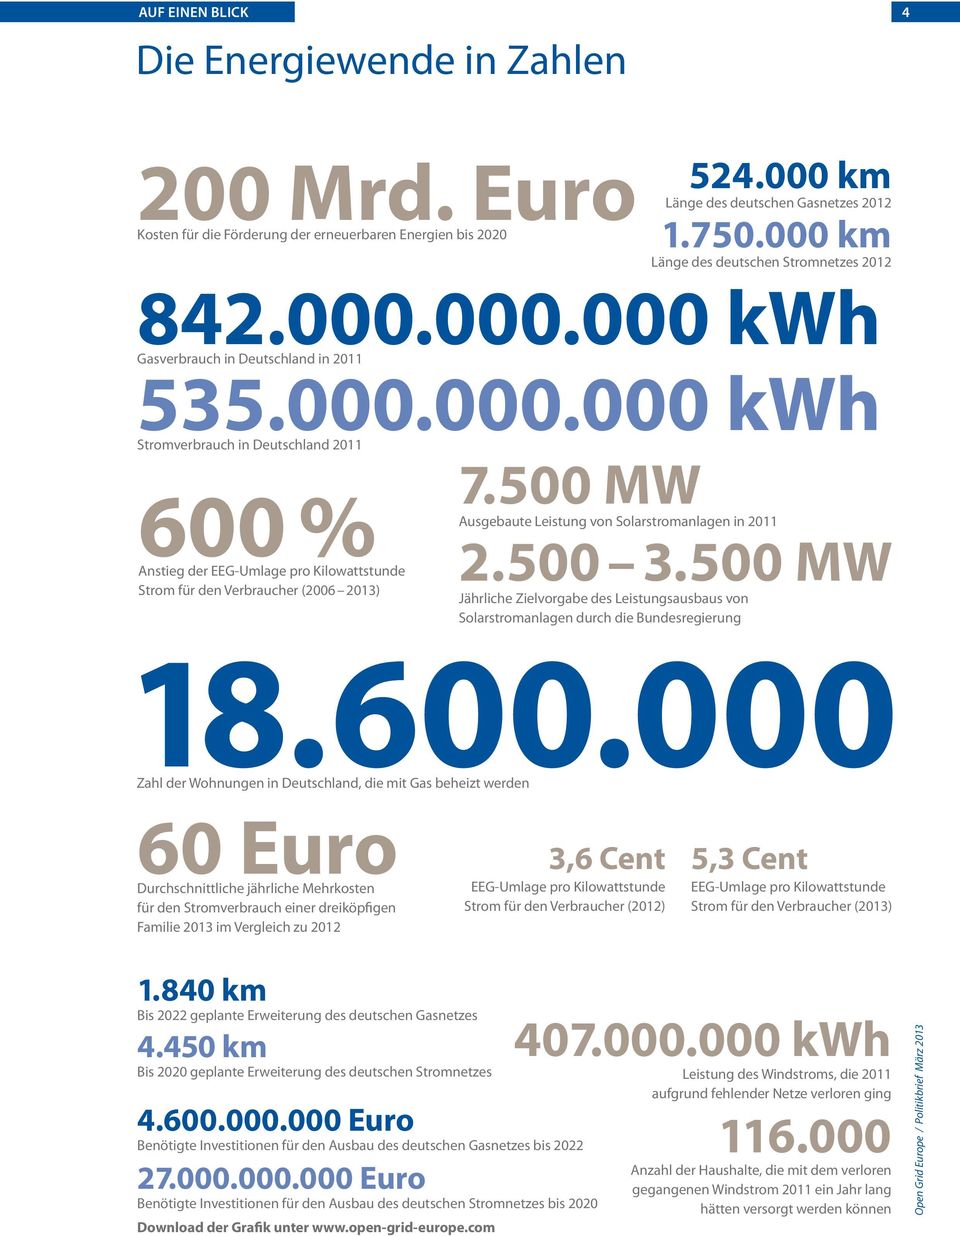 500 MW Ausgebaute Leistung von Solarstromanlagen in 2011 2.500 3.500 MW Jährliche Zielvorgabe des Leistungsausbaus von Solarstromanlagen durch die Bundesregierung 18.600.